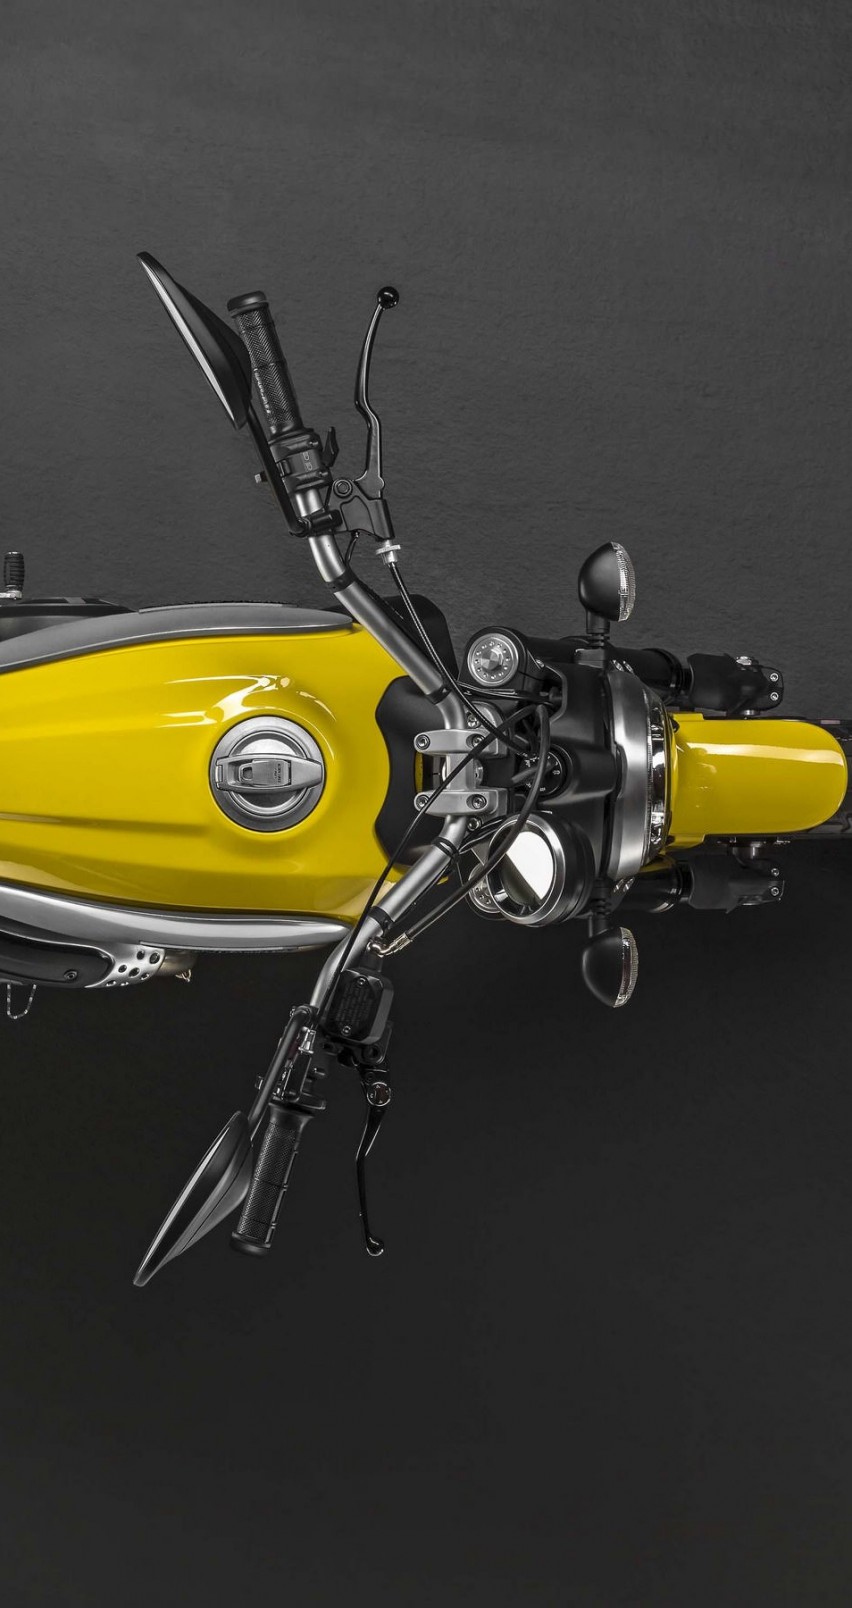 Ducati Scrambler Top View Wallpaper for Apple iPhone 6 / 6s